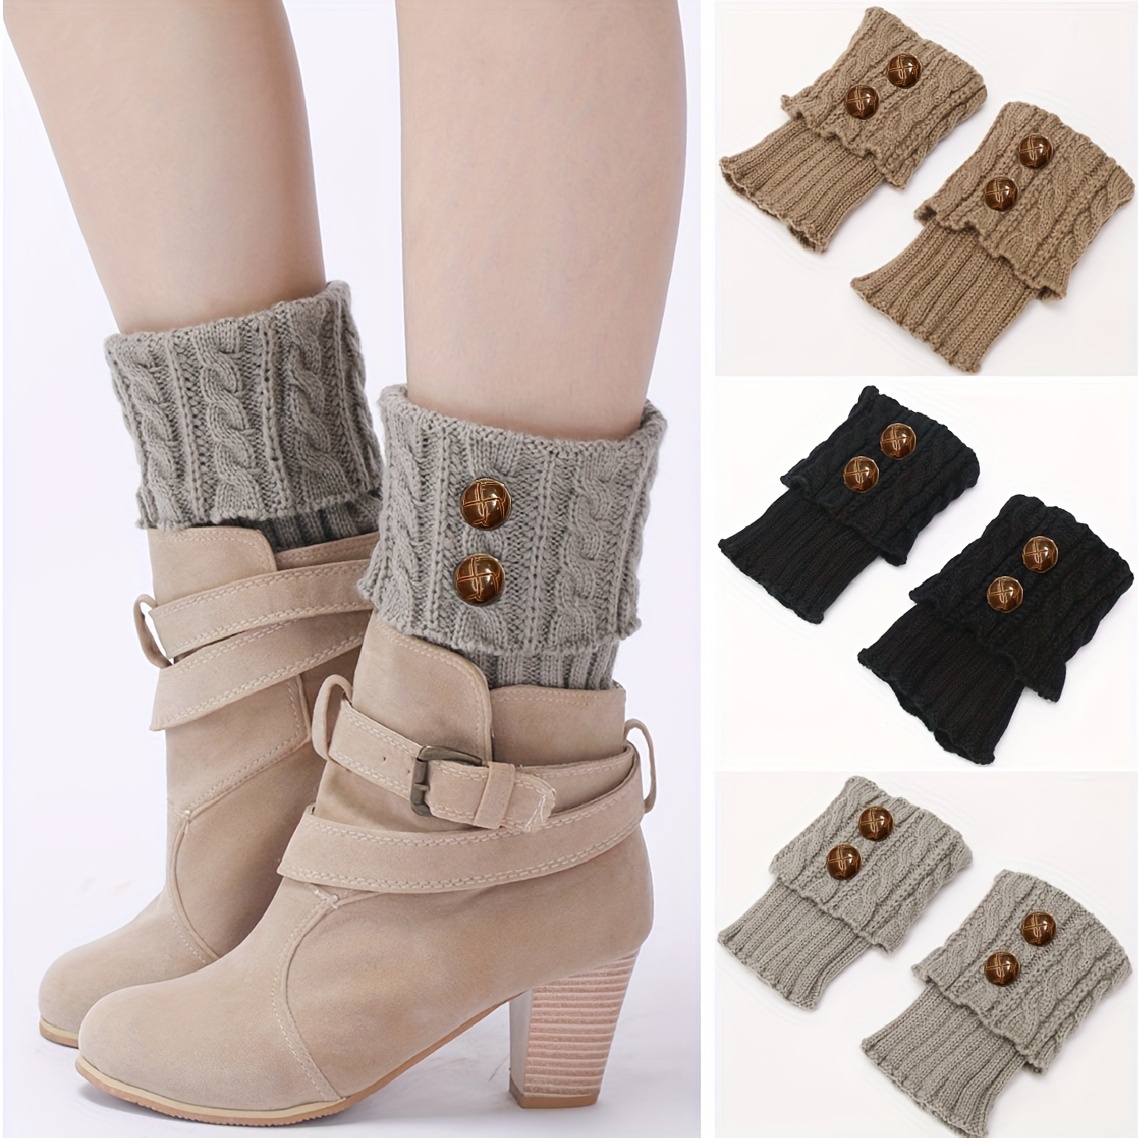 Wool leg warmers womens, Knit boot toppers, Long leg warmers